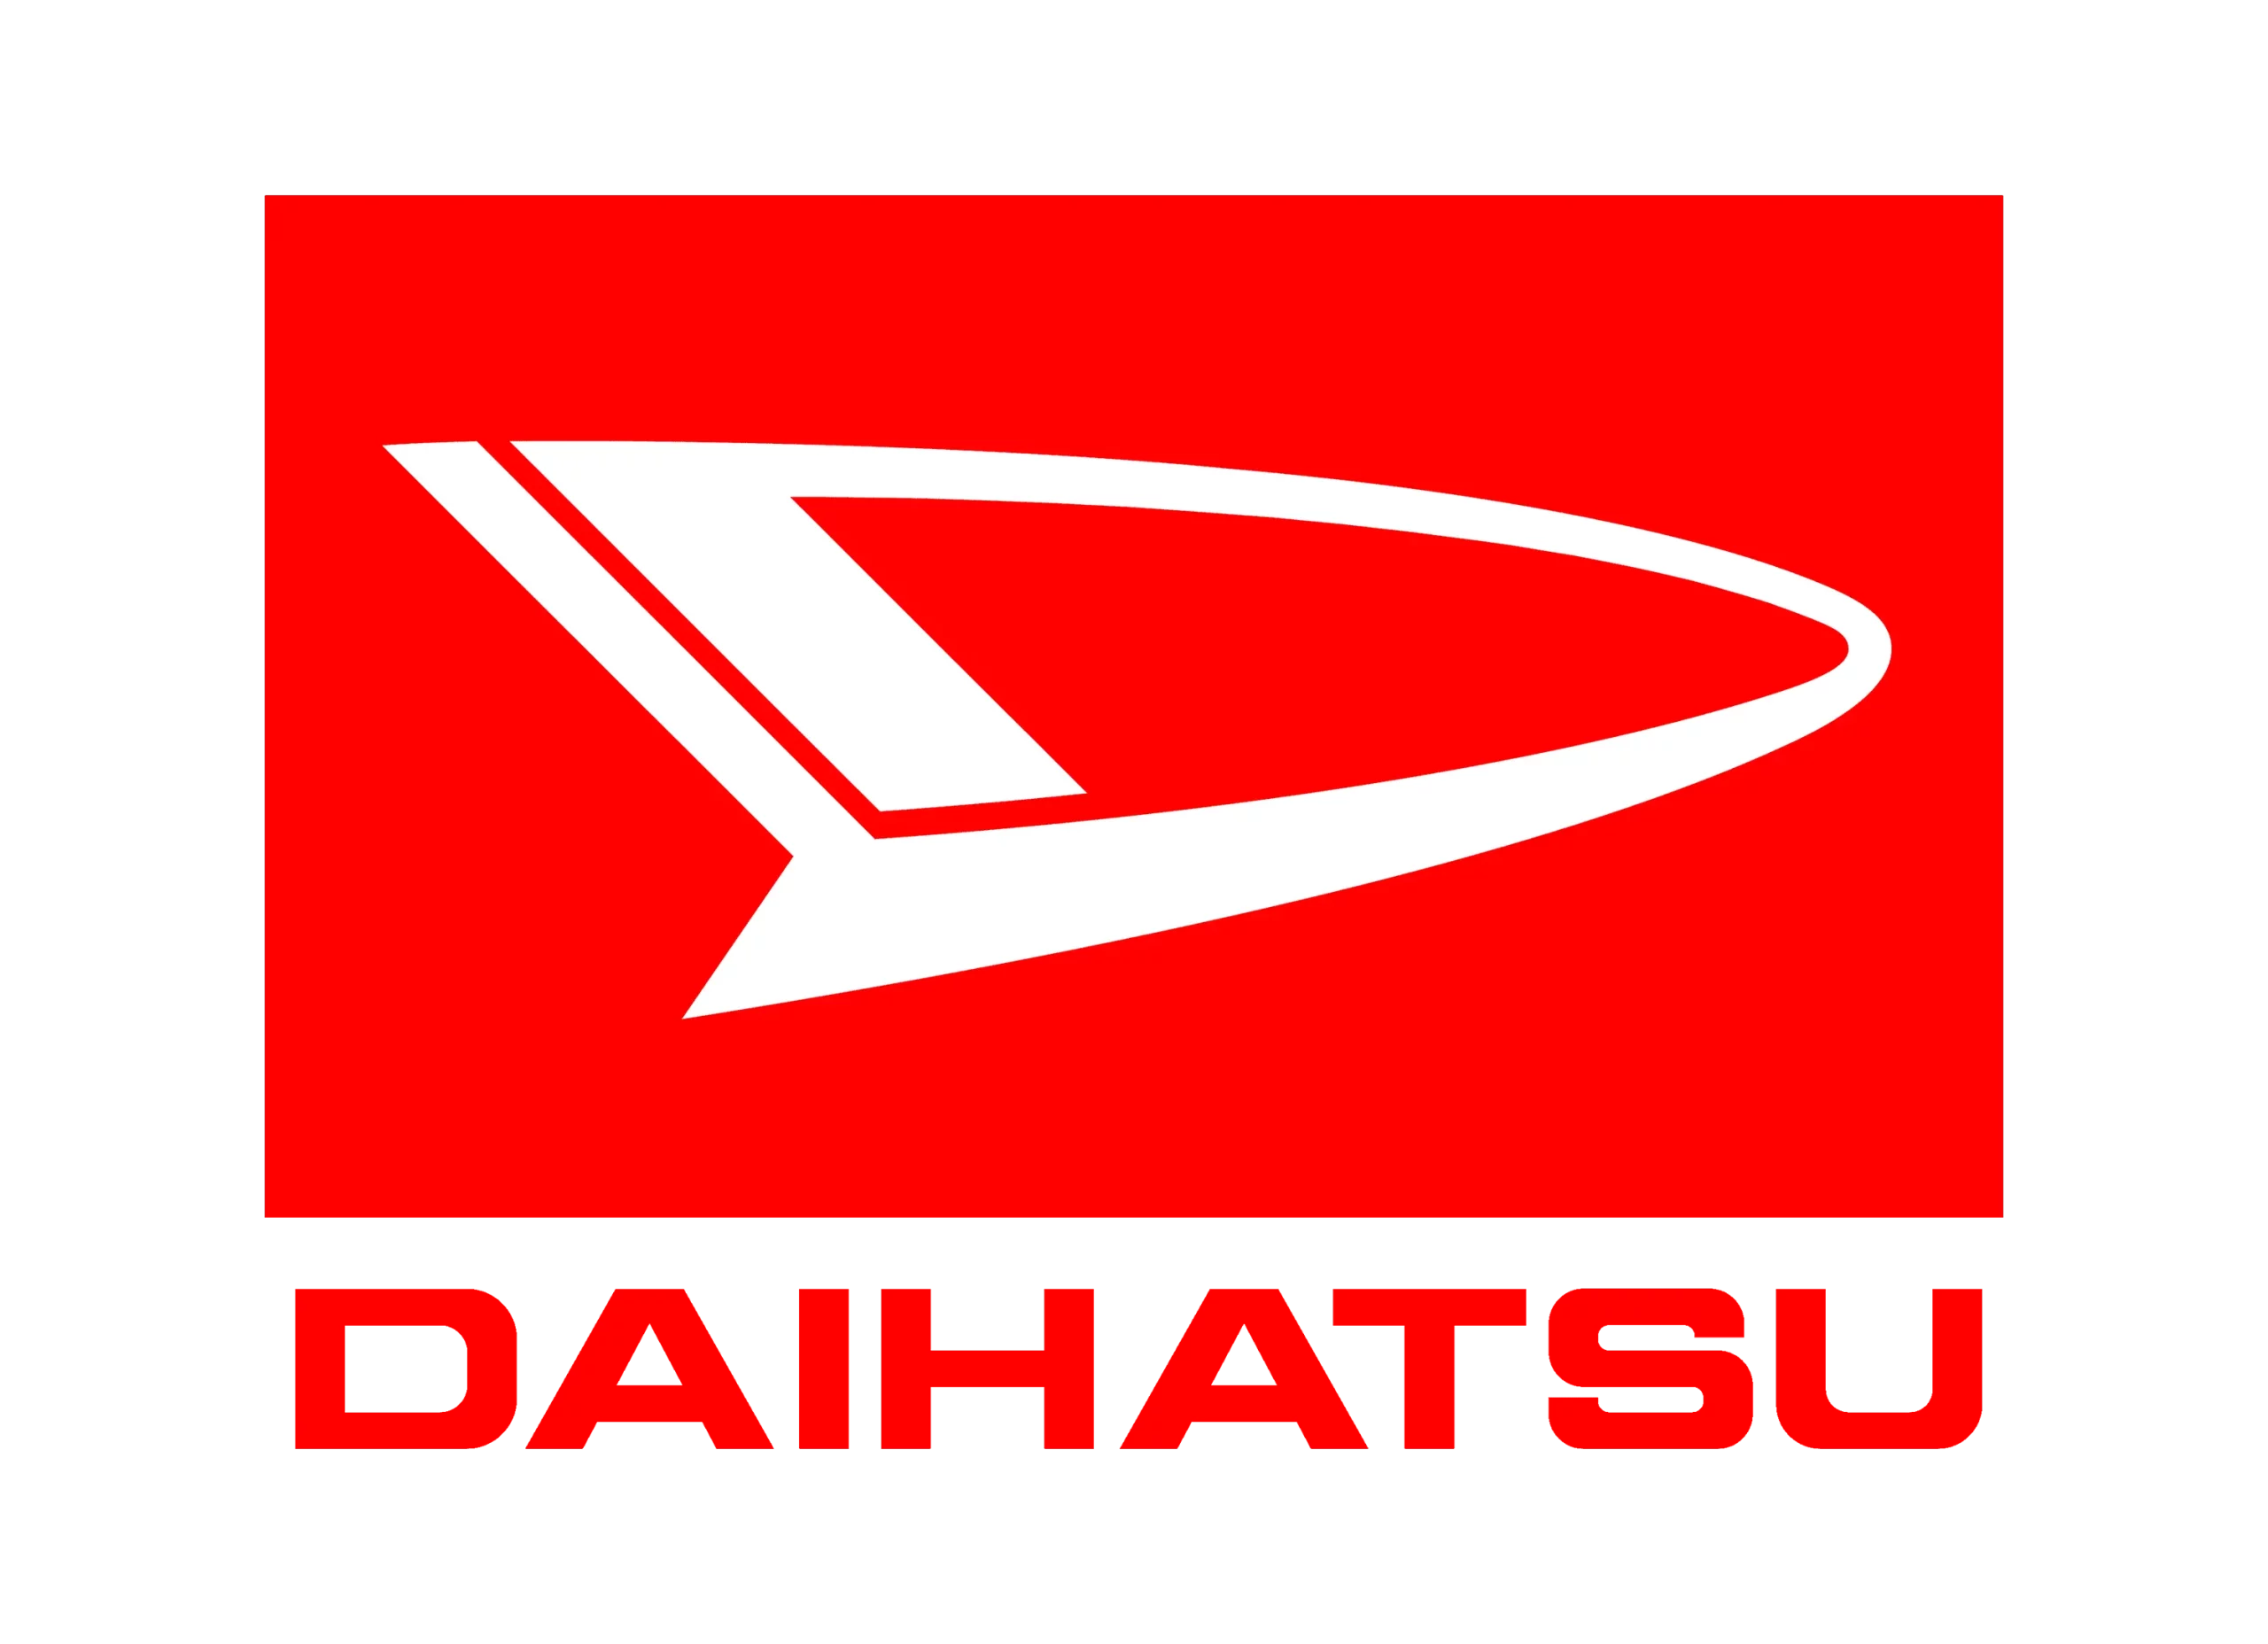 Daihatsu logo 1974-1998